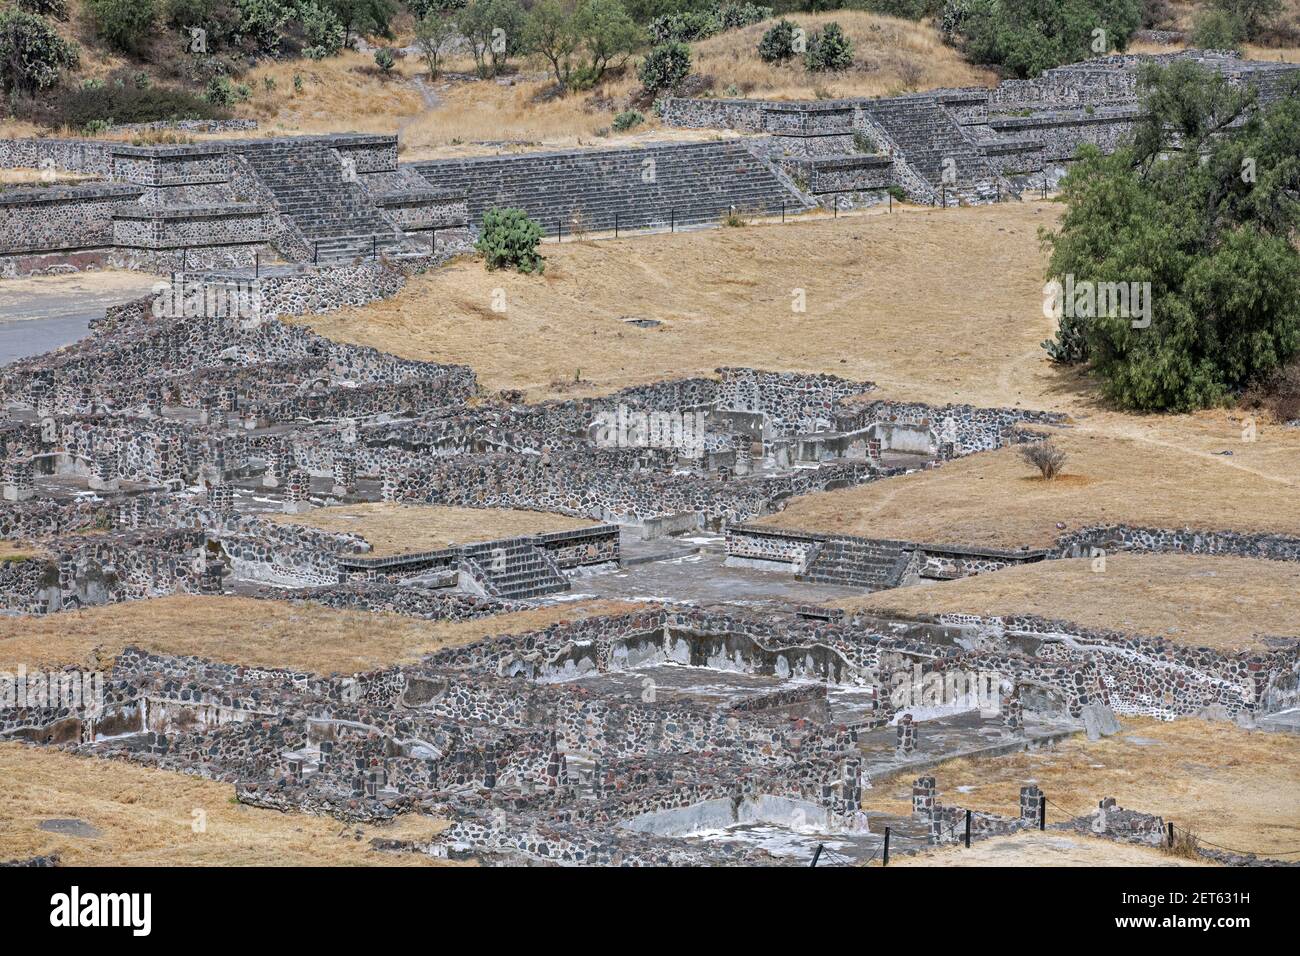 Ruines de l'ancienne ville de Teotihuacán, site archéologique des pyramides méso-américaines construites dans les Amériques pré-colombiennes au Mexique Banque D'Images